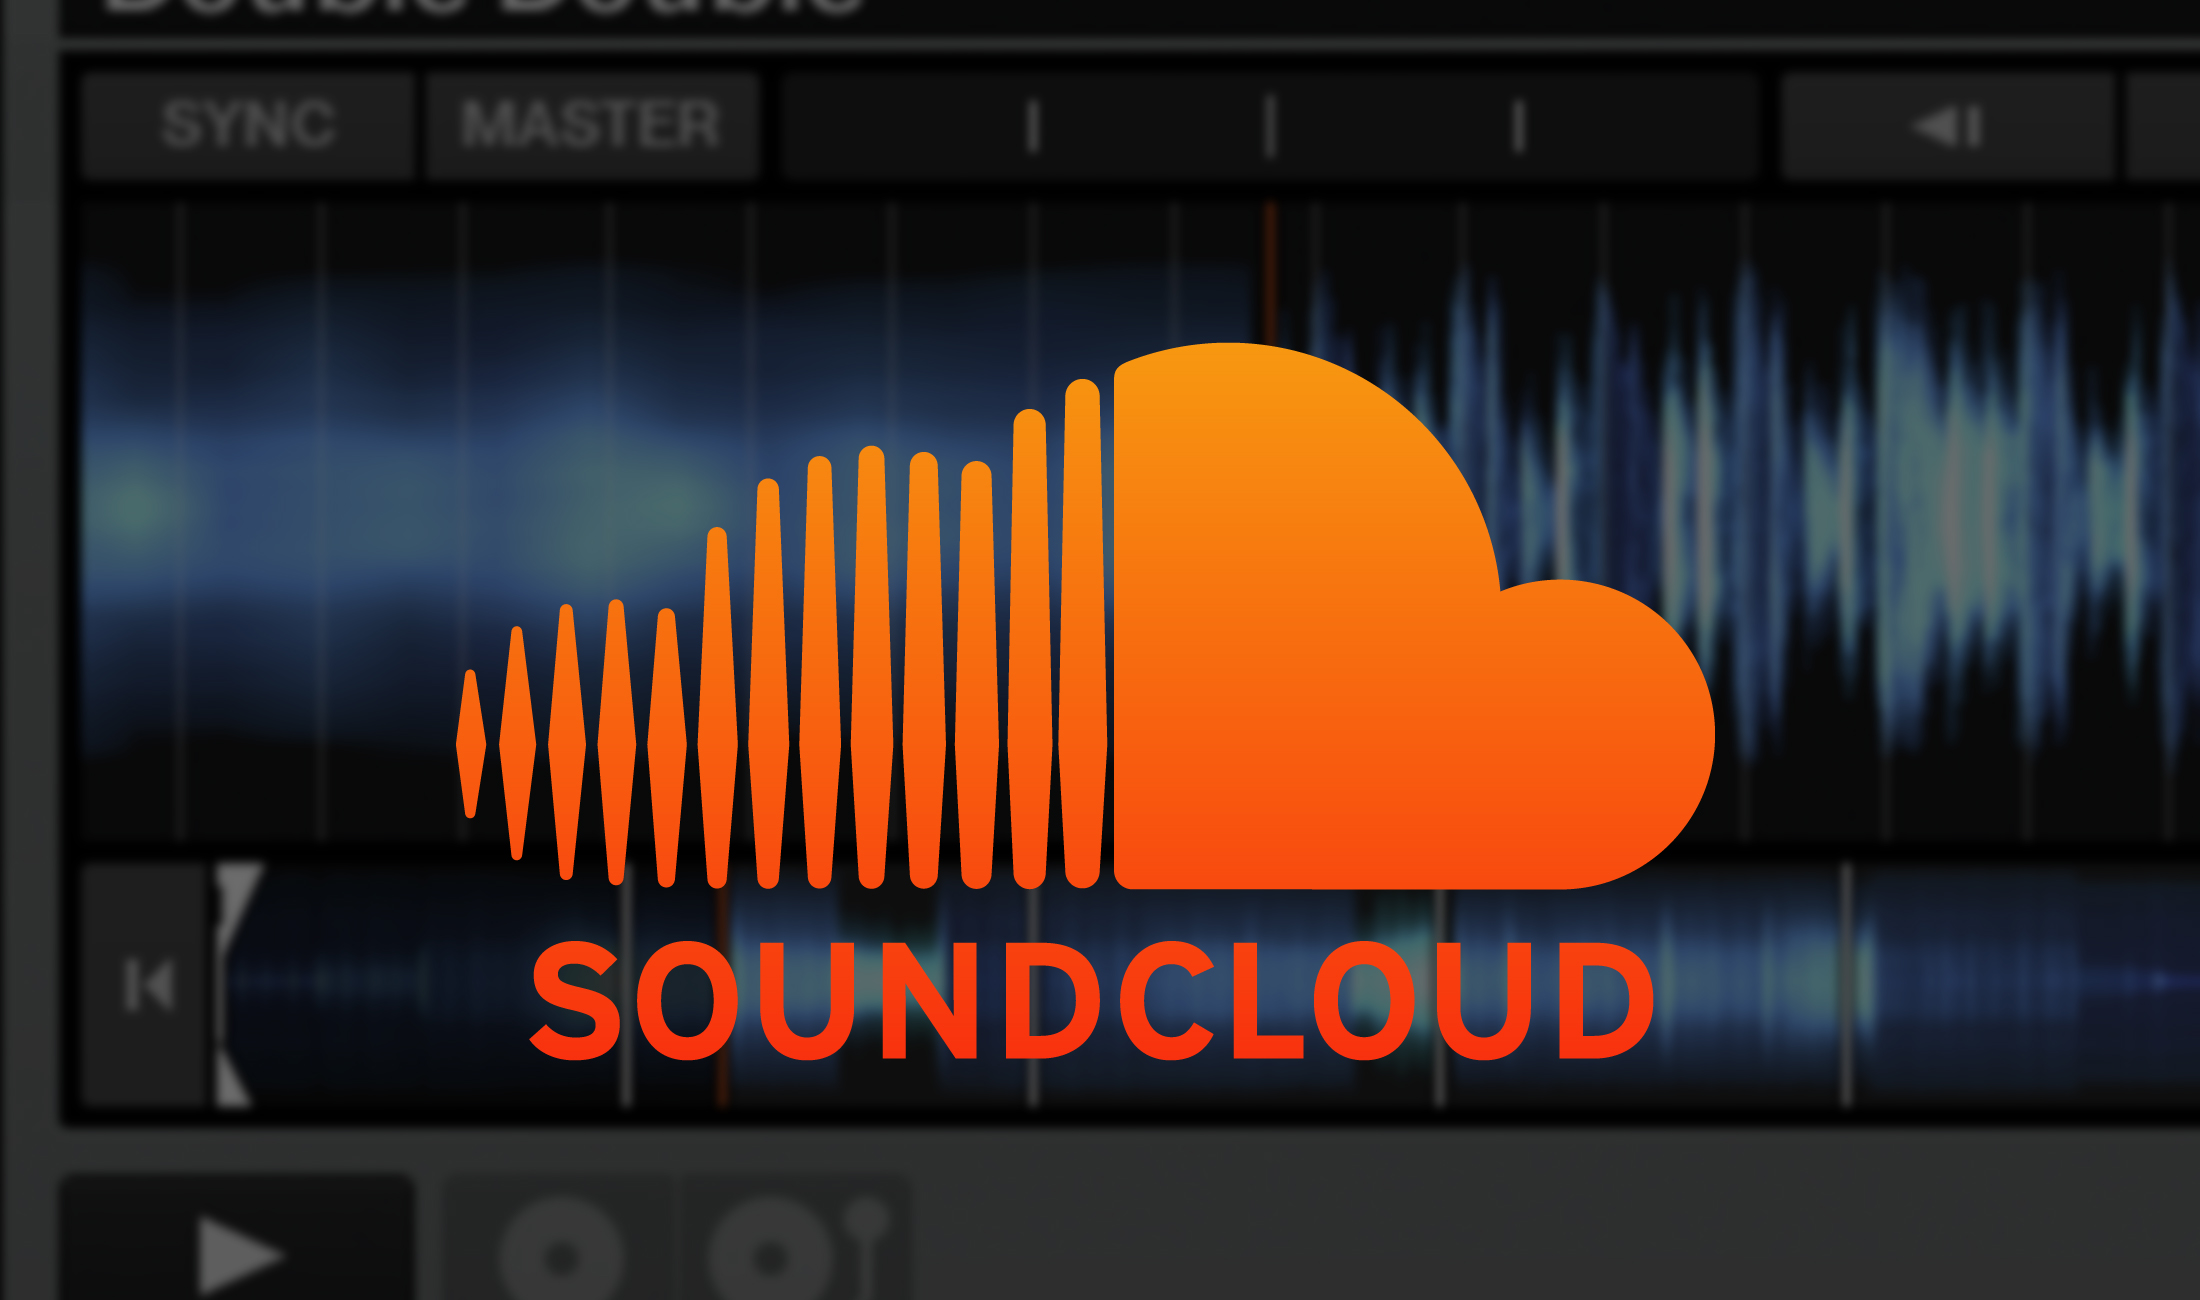 SoundCloud Integration für Traktor, Serato und weitere DJ-Apps kommt